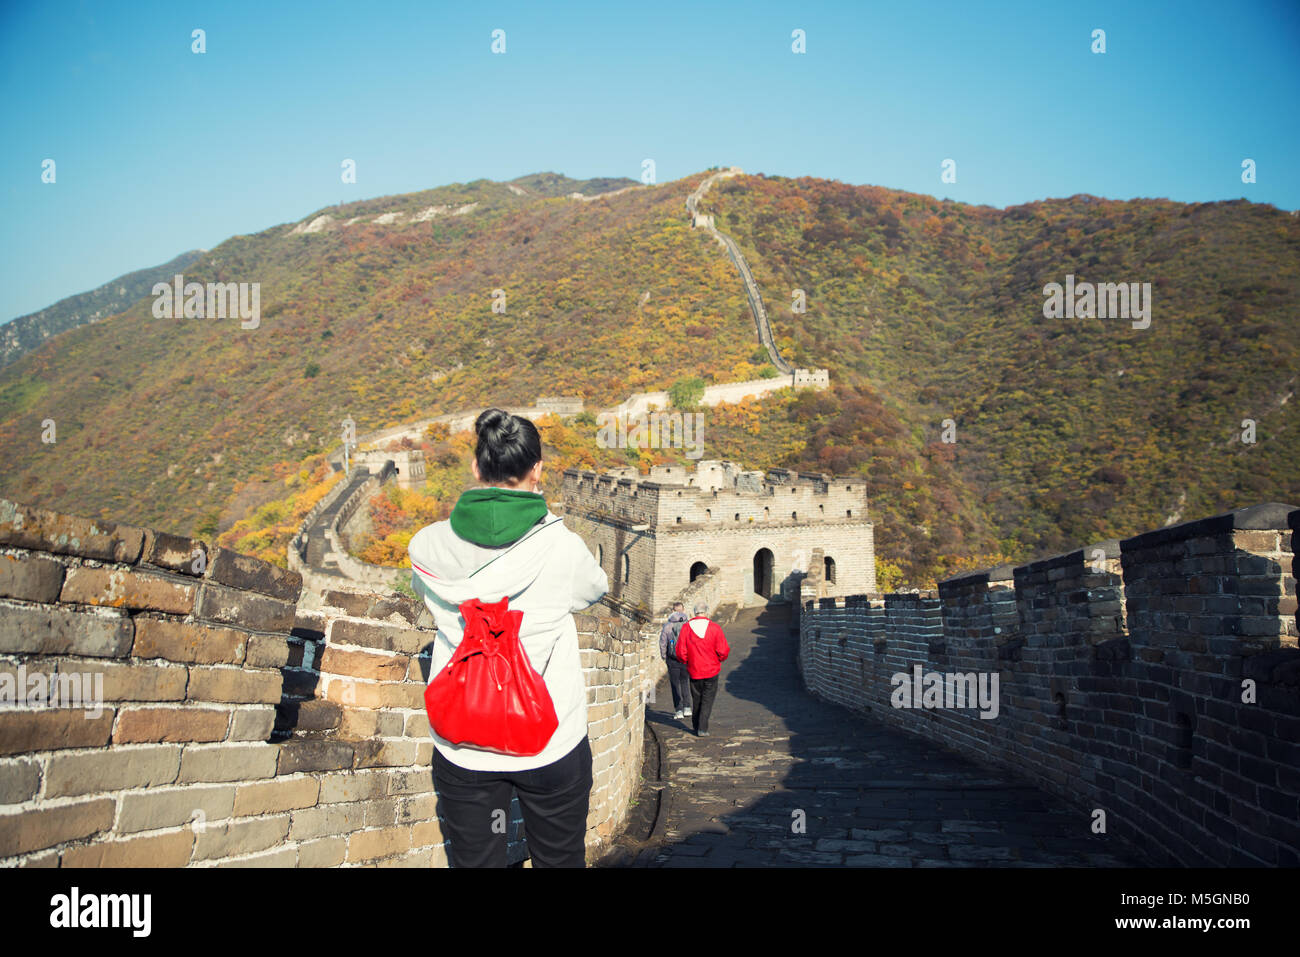 Junge Mädchen touristische von hinten mit Blick auf die Chinesische Mauer bei Badaling berühmt Tourismus Attraktion während der Reise Urlaub in Peking. Asien Stockfoto